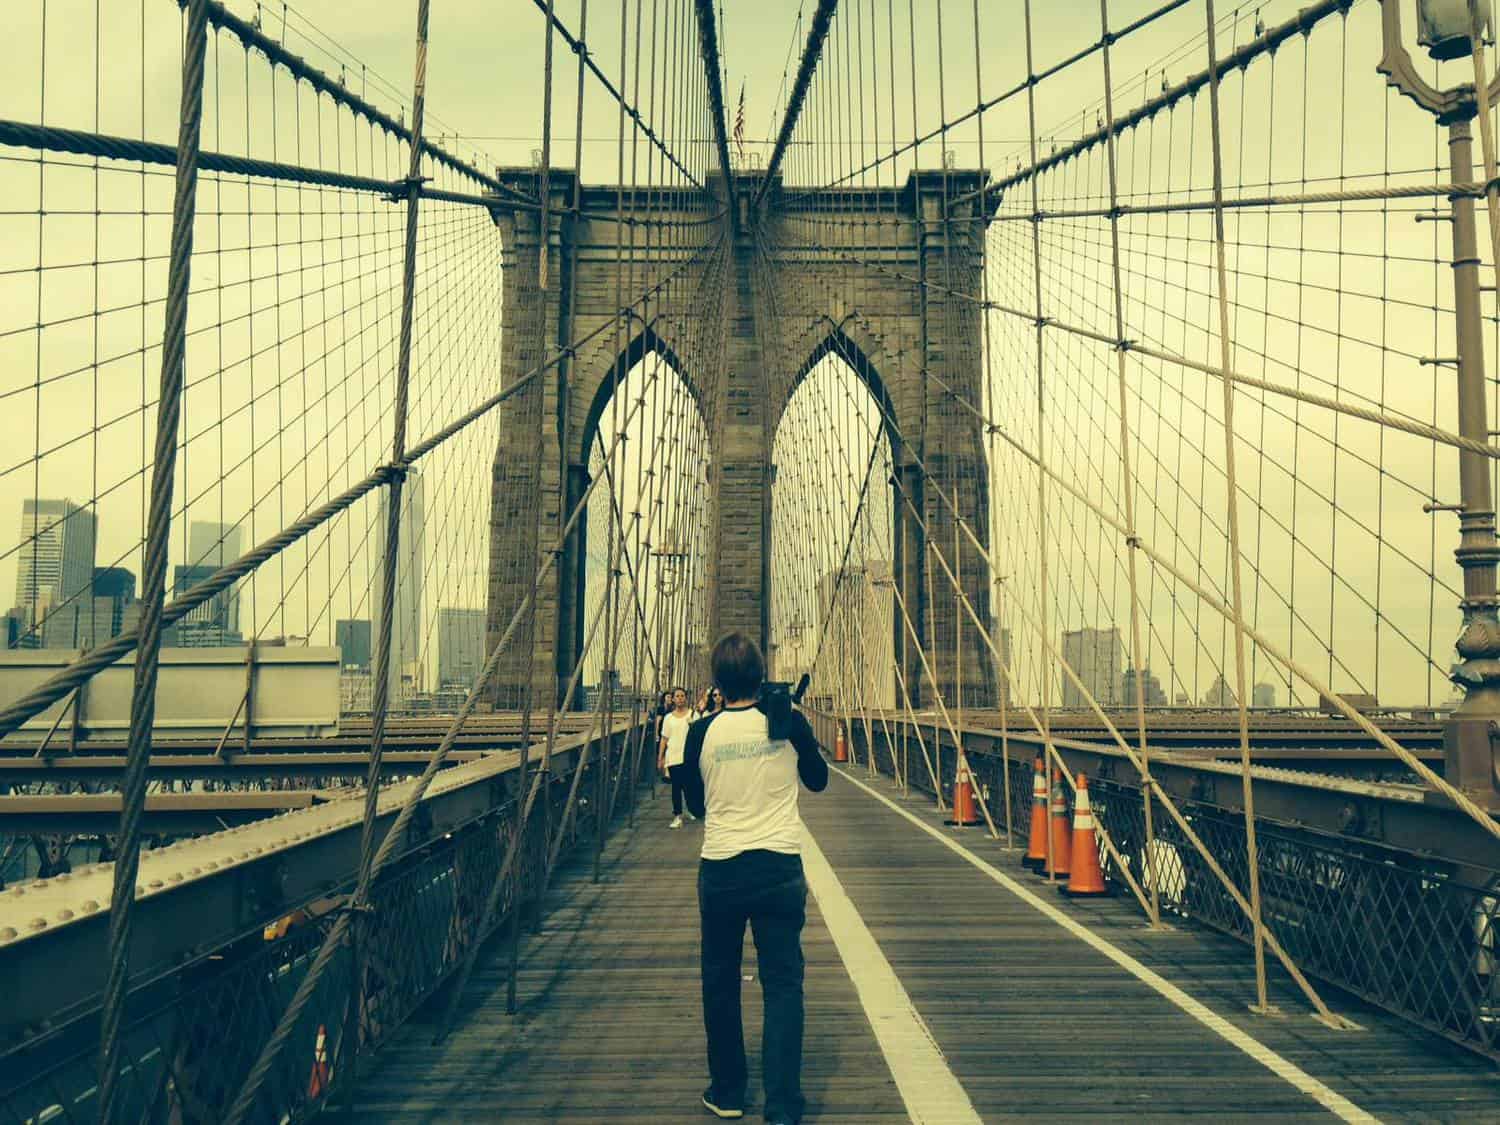 A man films people walking on a bridge